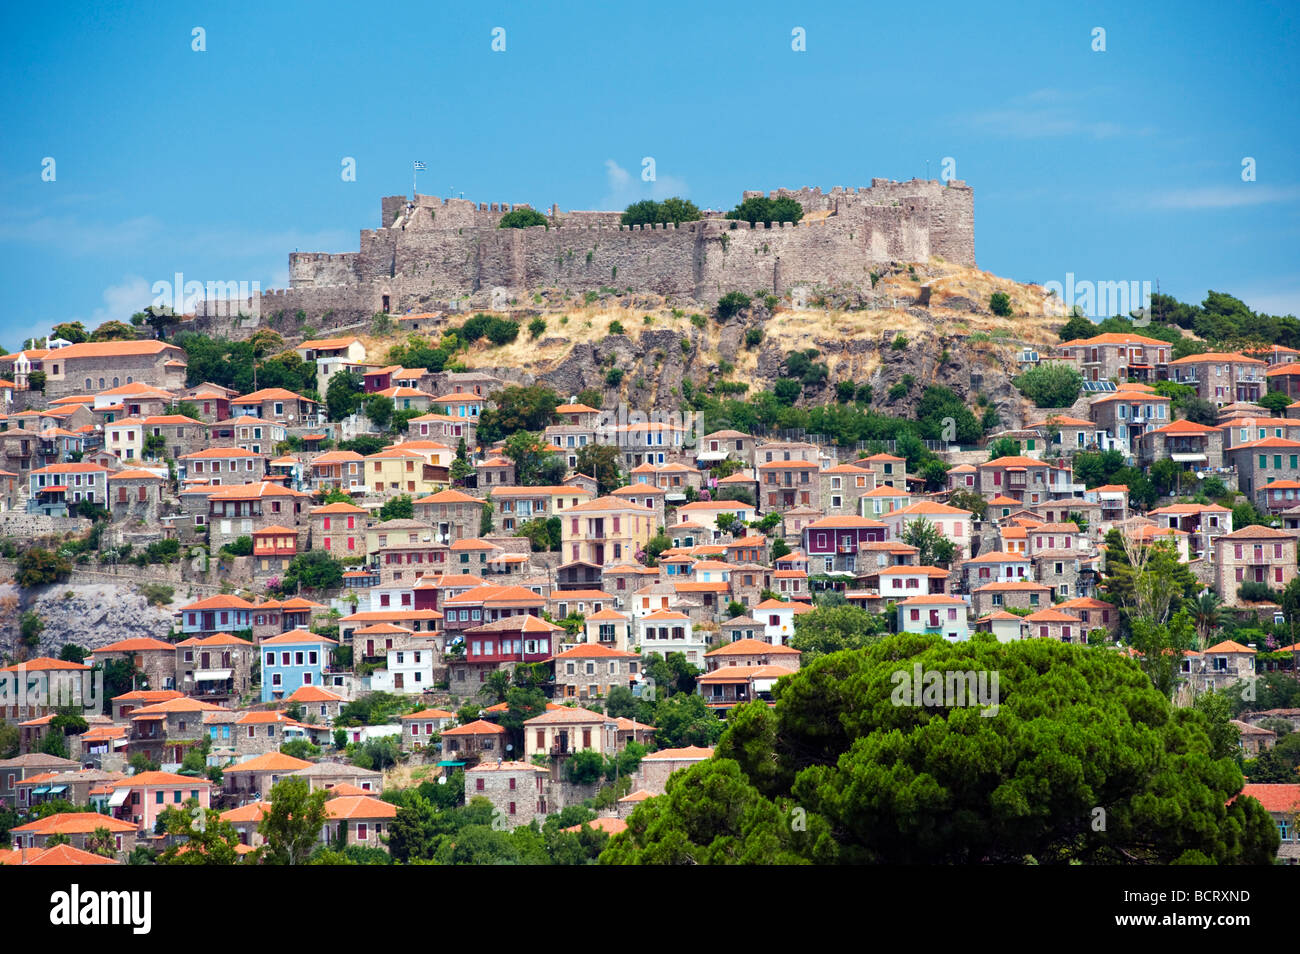 Vue de la ville de Molyvos ou Mithymna avec château historique sur l'île de Lesbos sur la colline en Grèce Banque D'Images